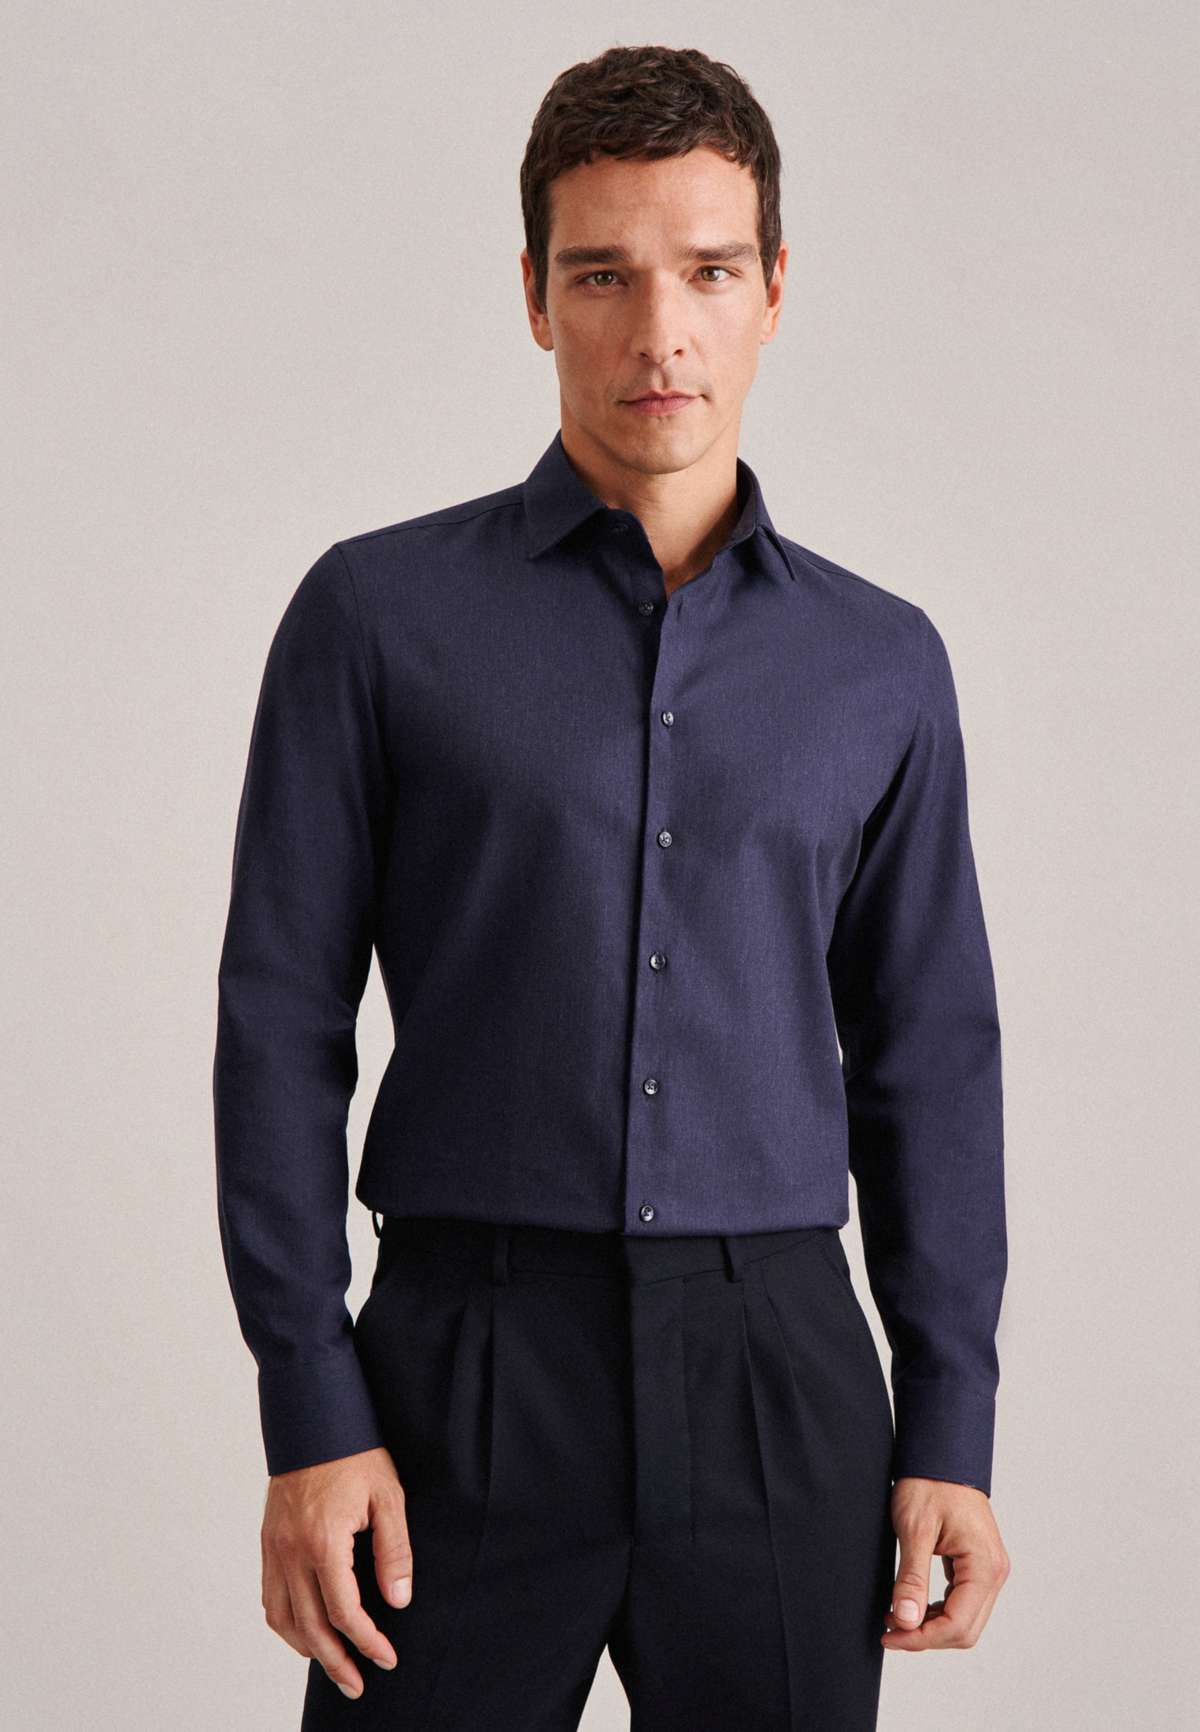 Фланелевая рубашка, стандартный воротник Кент с длинными рукавами, однотонная